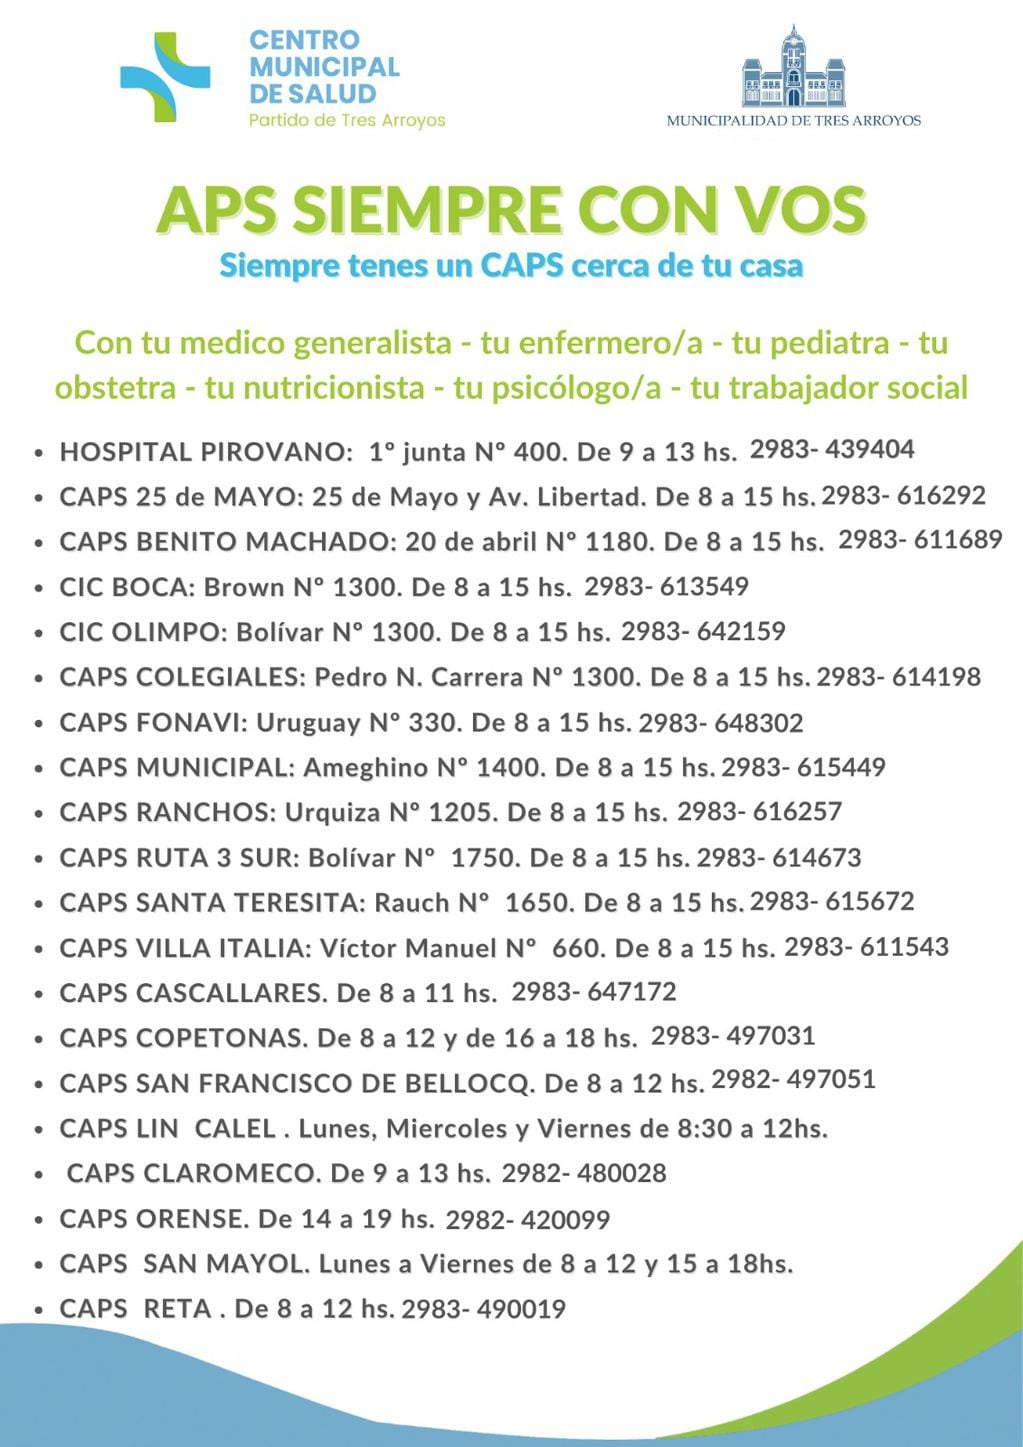 CAPS de Tres Arroyos